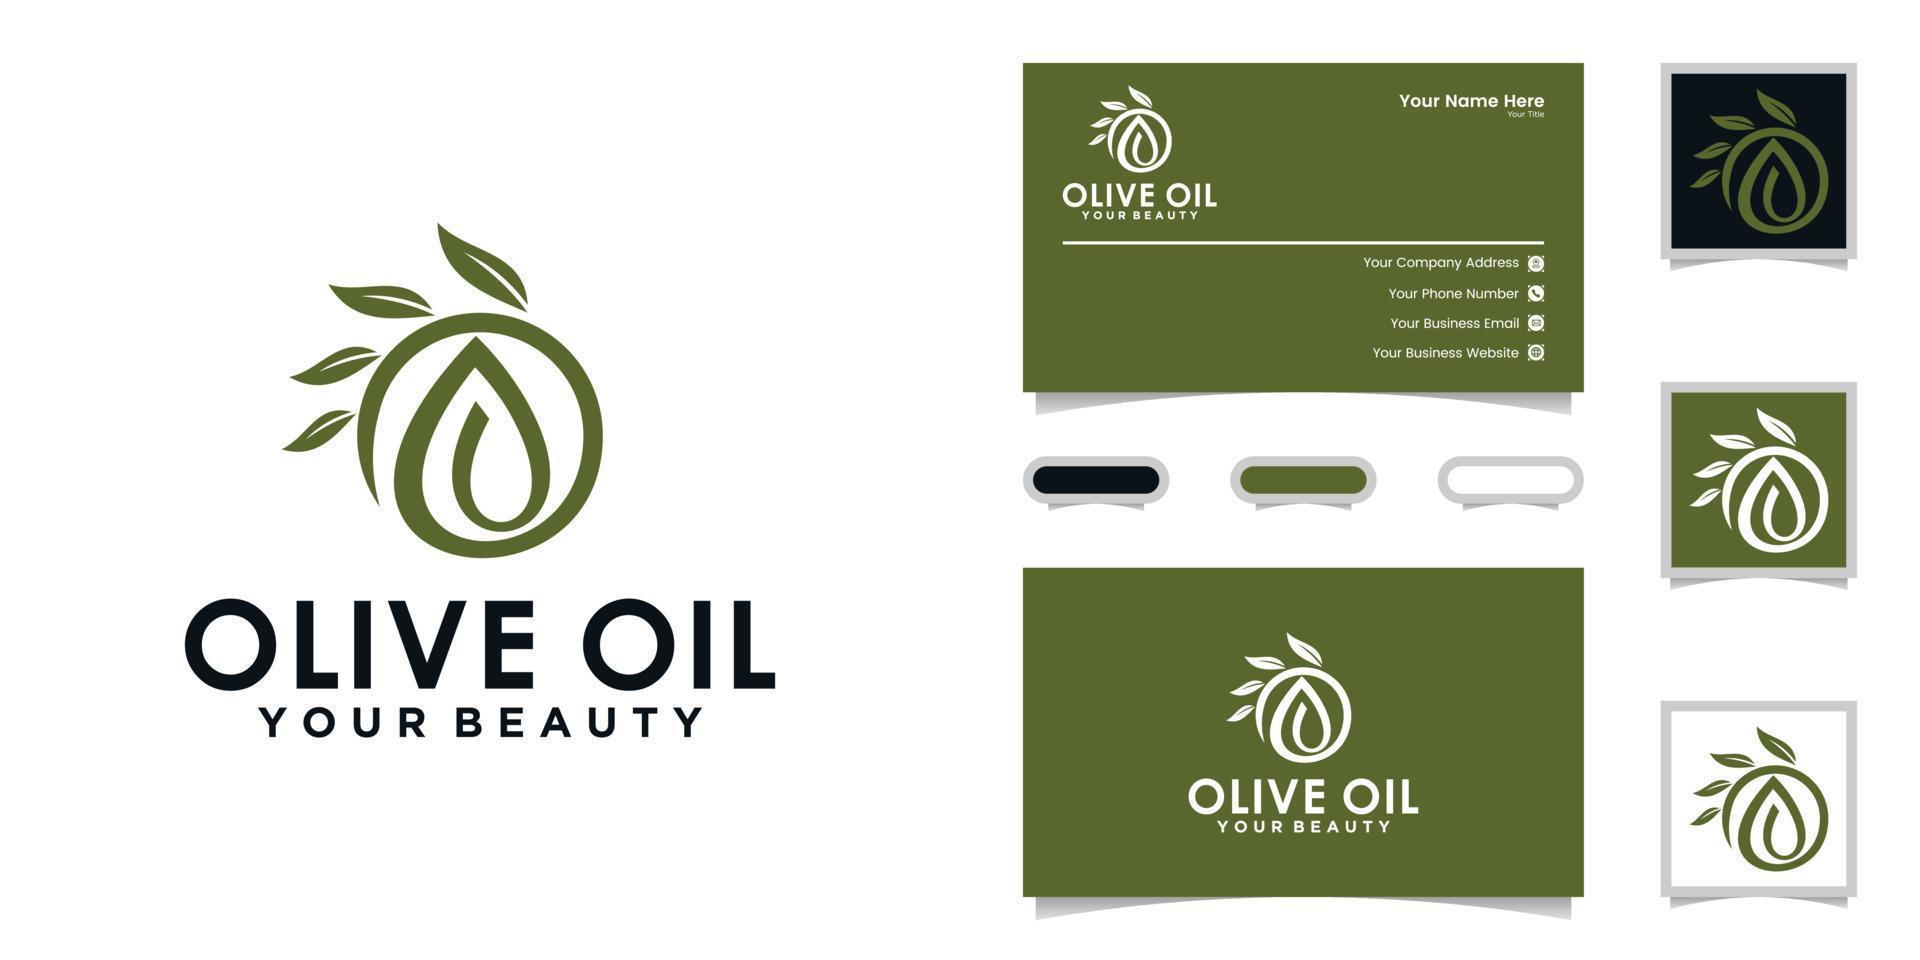 olivenöl frau schönheit logo und inspiration für visitenkarten vektor